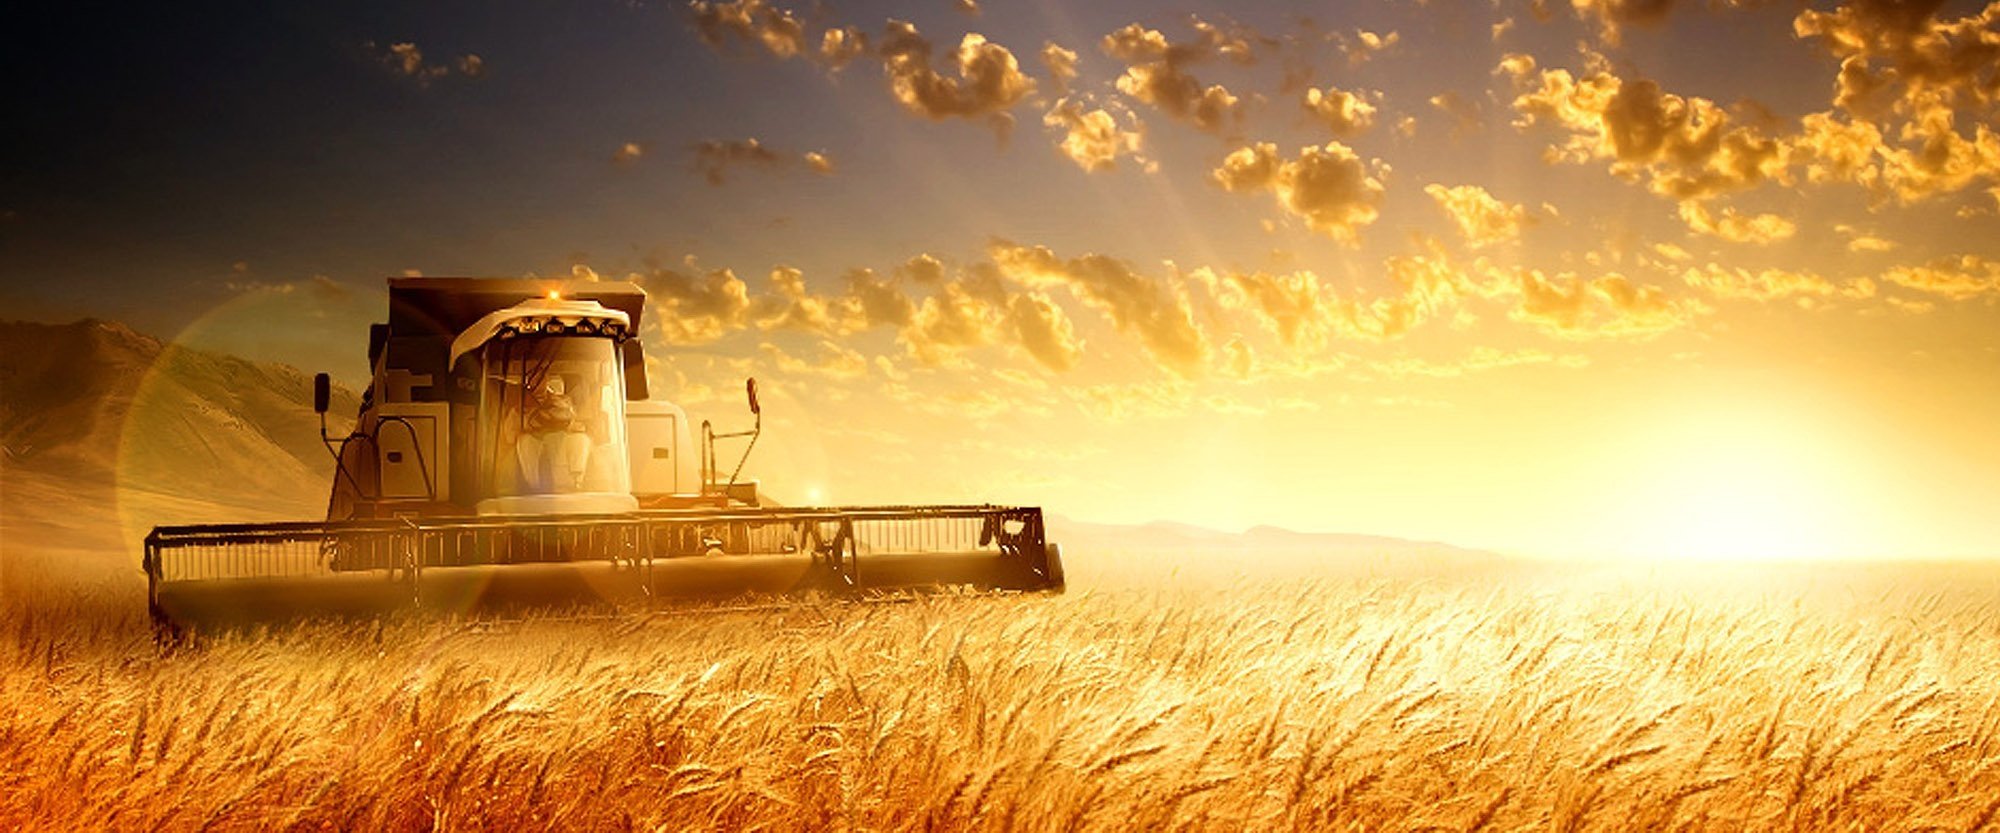 Слово сх. Комбайн в поле на закате. Комбайн в поле колосья. Сельское хозяйство комбайн. Поле пшеницы и трактор.